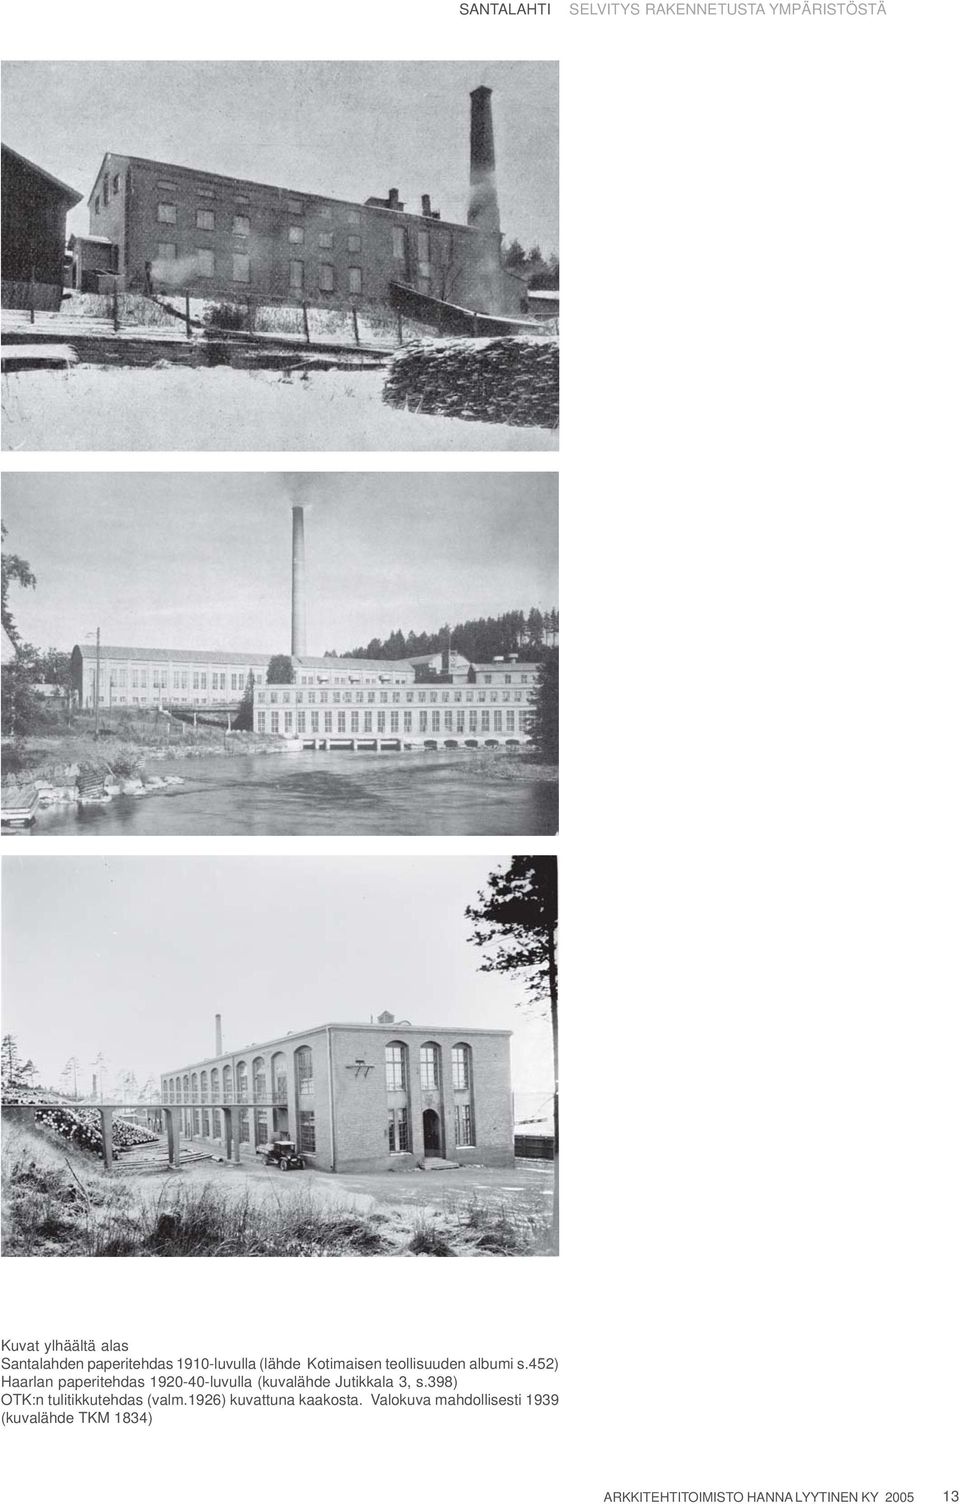 452) Haarlan paperitehdas 1920-40-luvulla (kuvalähde Jutikkala 3, s.